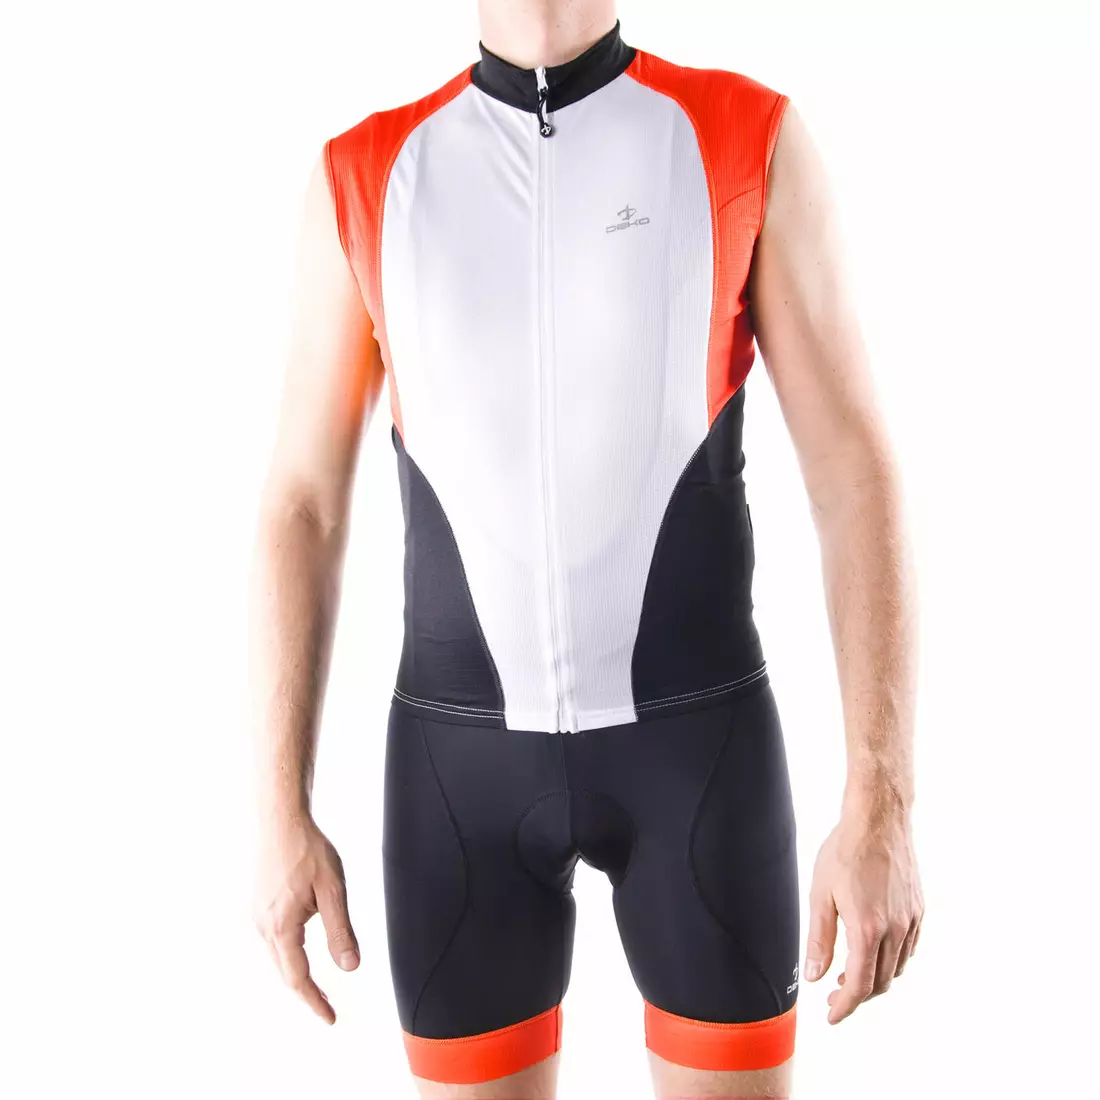 DEKO HAITI II pánský cyklistický dres bez rukávů, bílo-červený